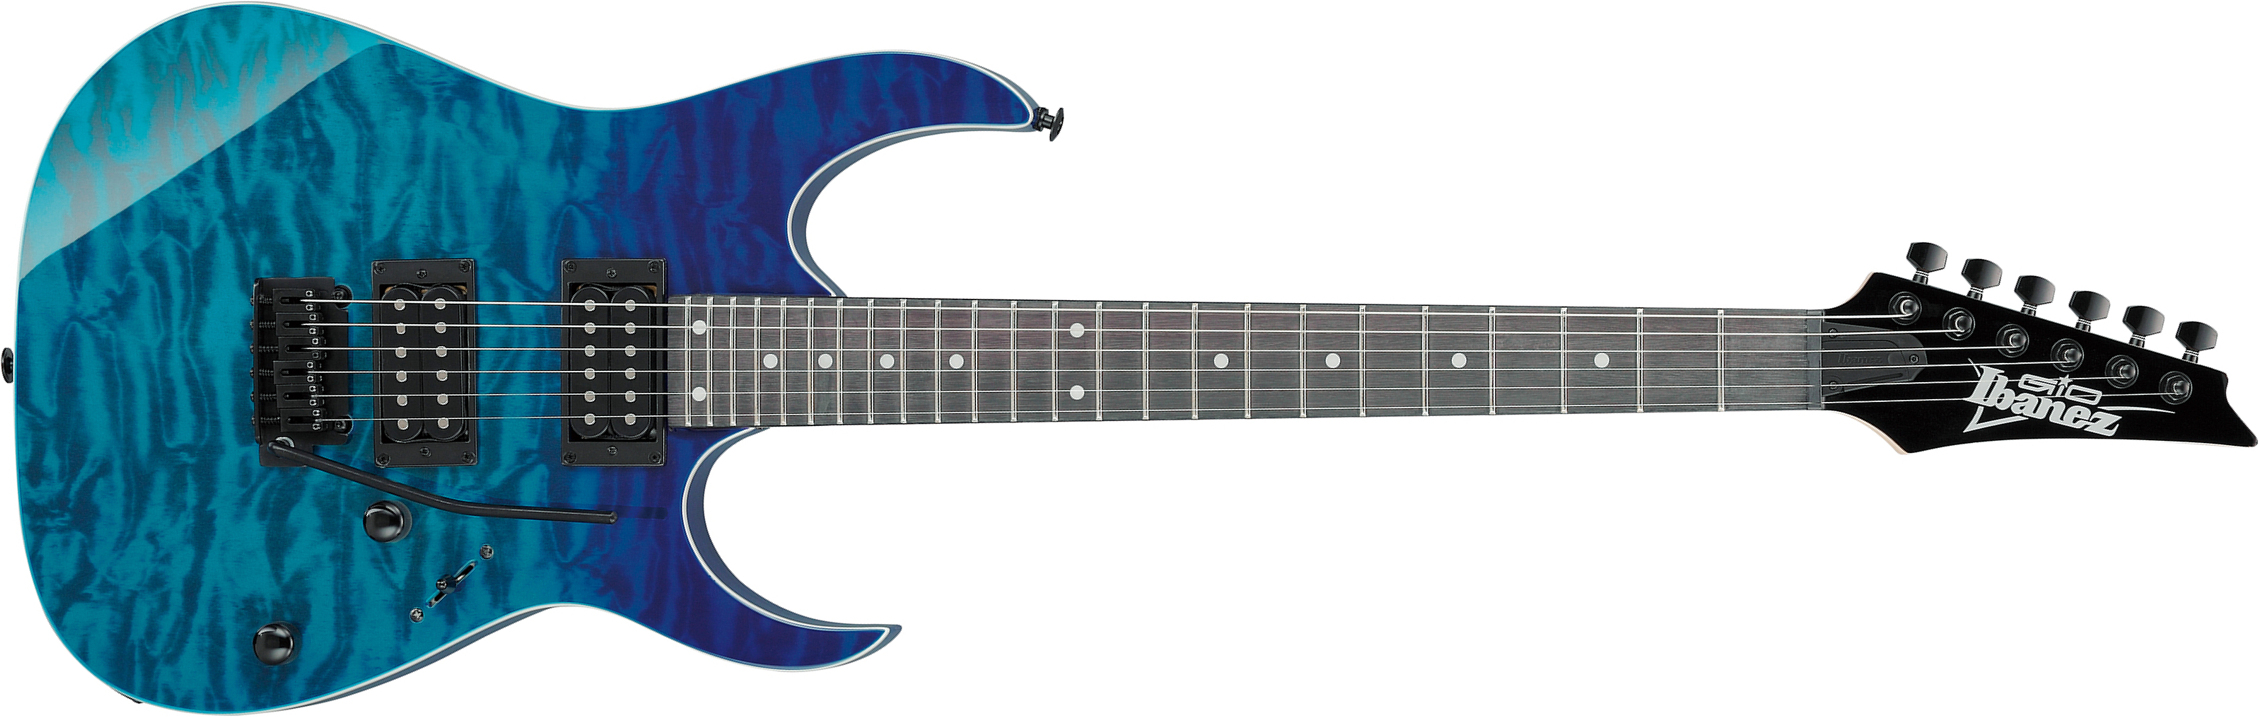 Ibanez Grg120qasp Bgd Gio 2h Trem Pur - Blue Gradation - Guitarra electrica metalica - Main picture